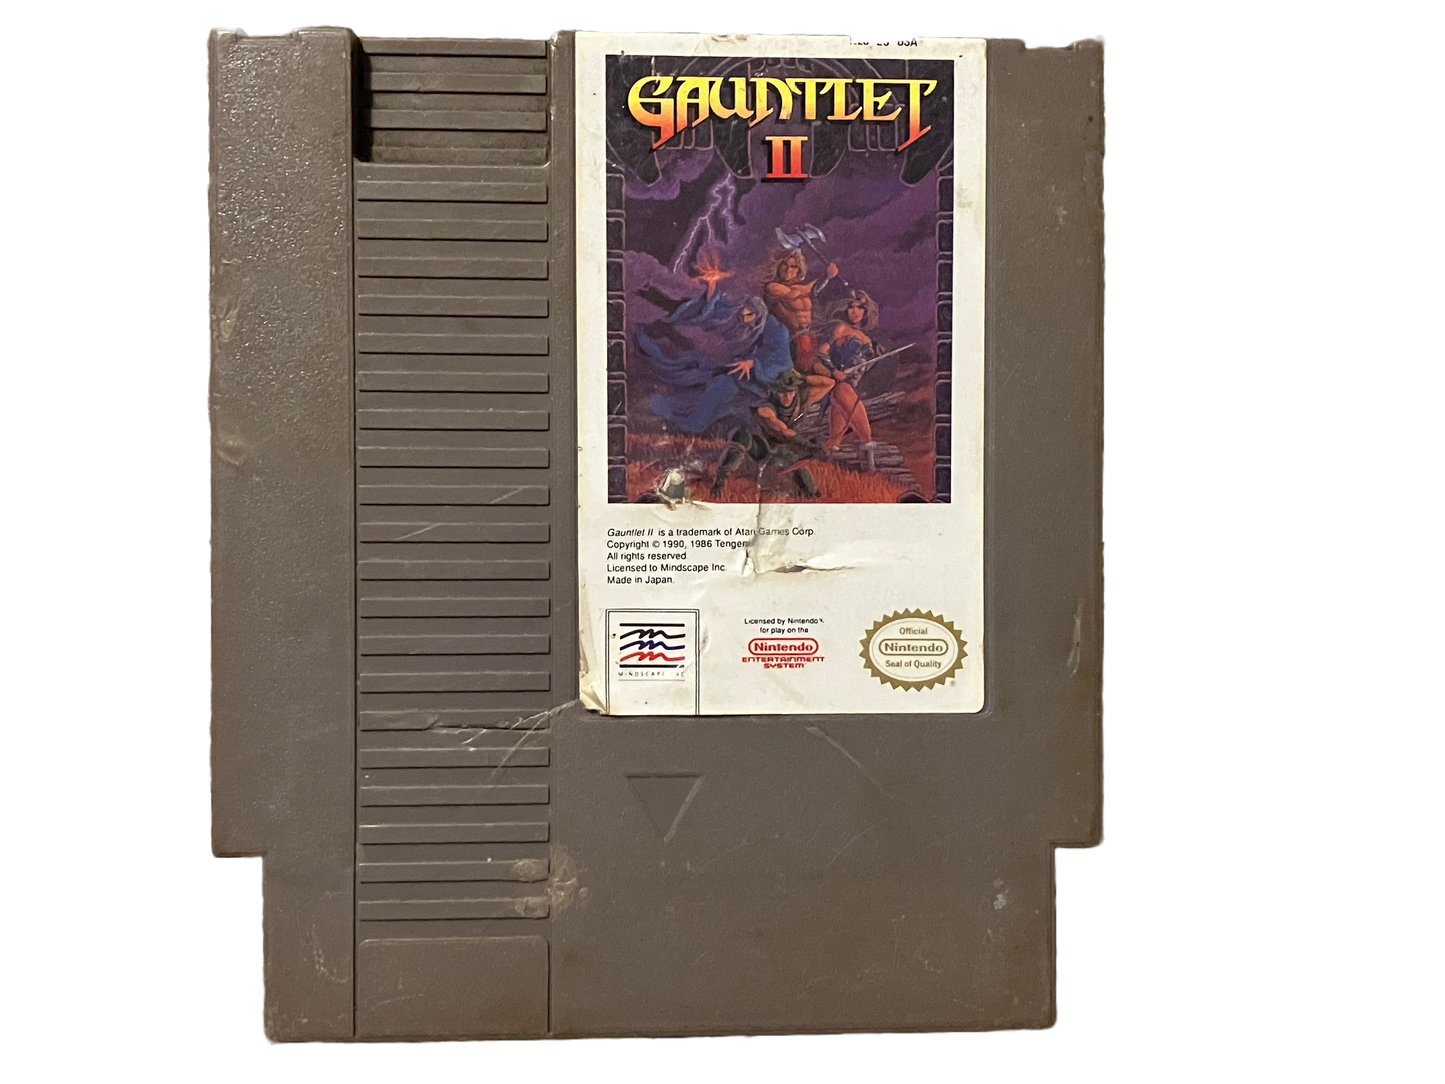 Gauntlet II Nintendo NES Video Game